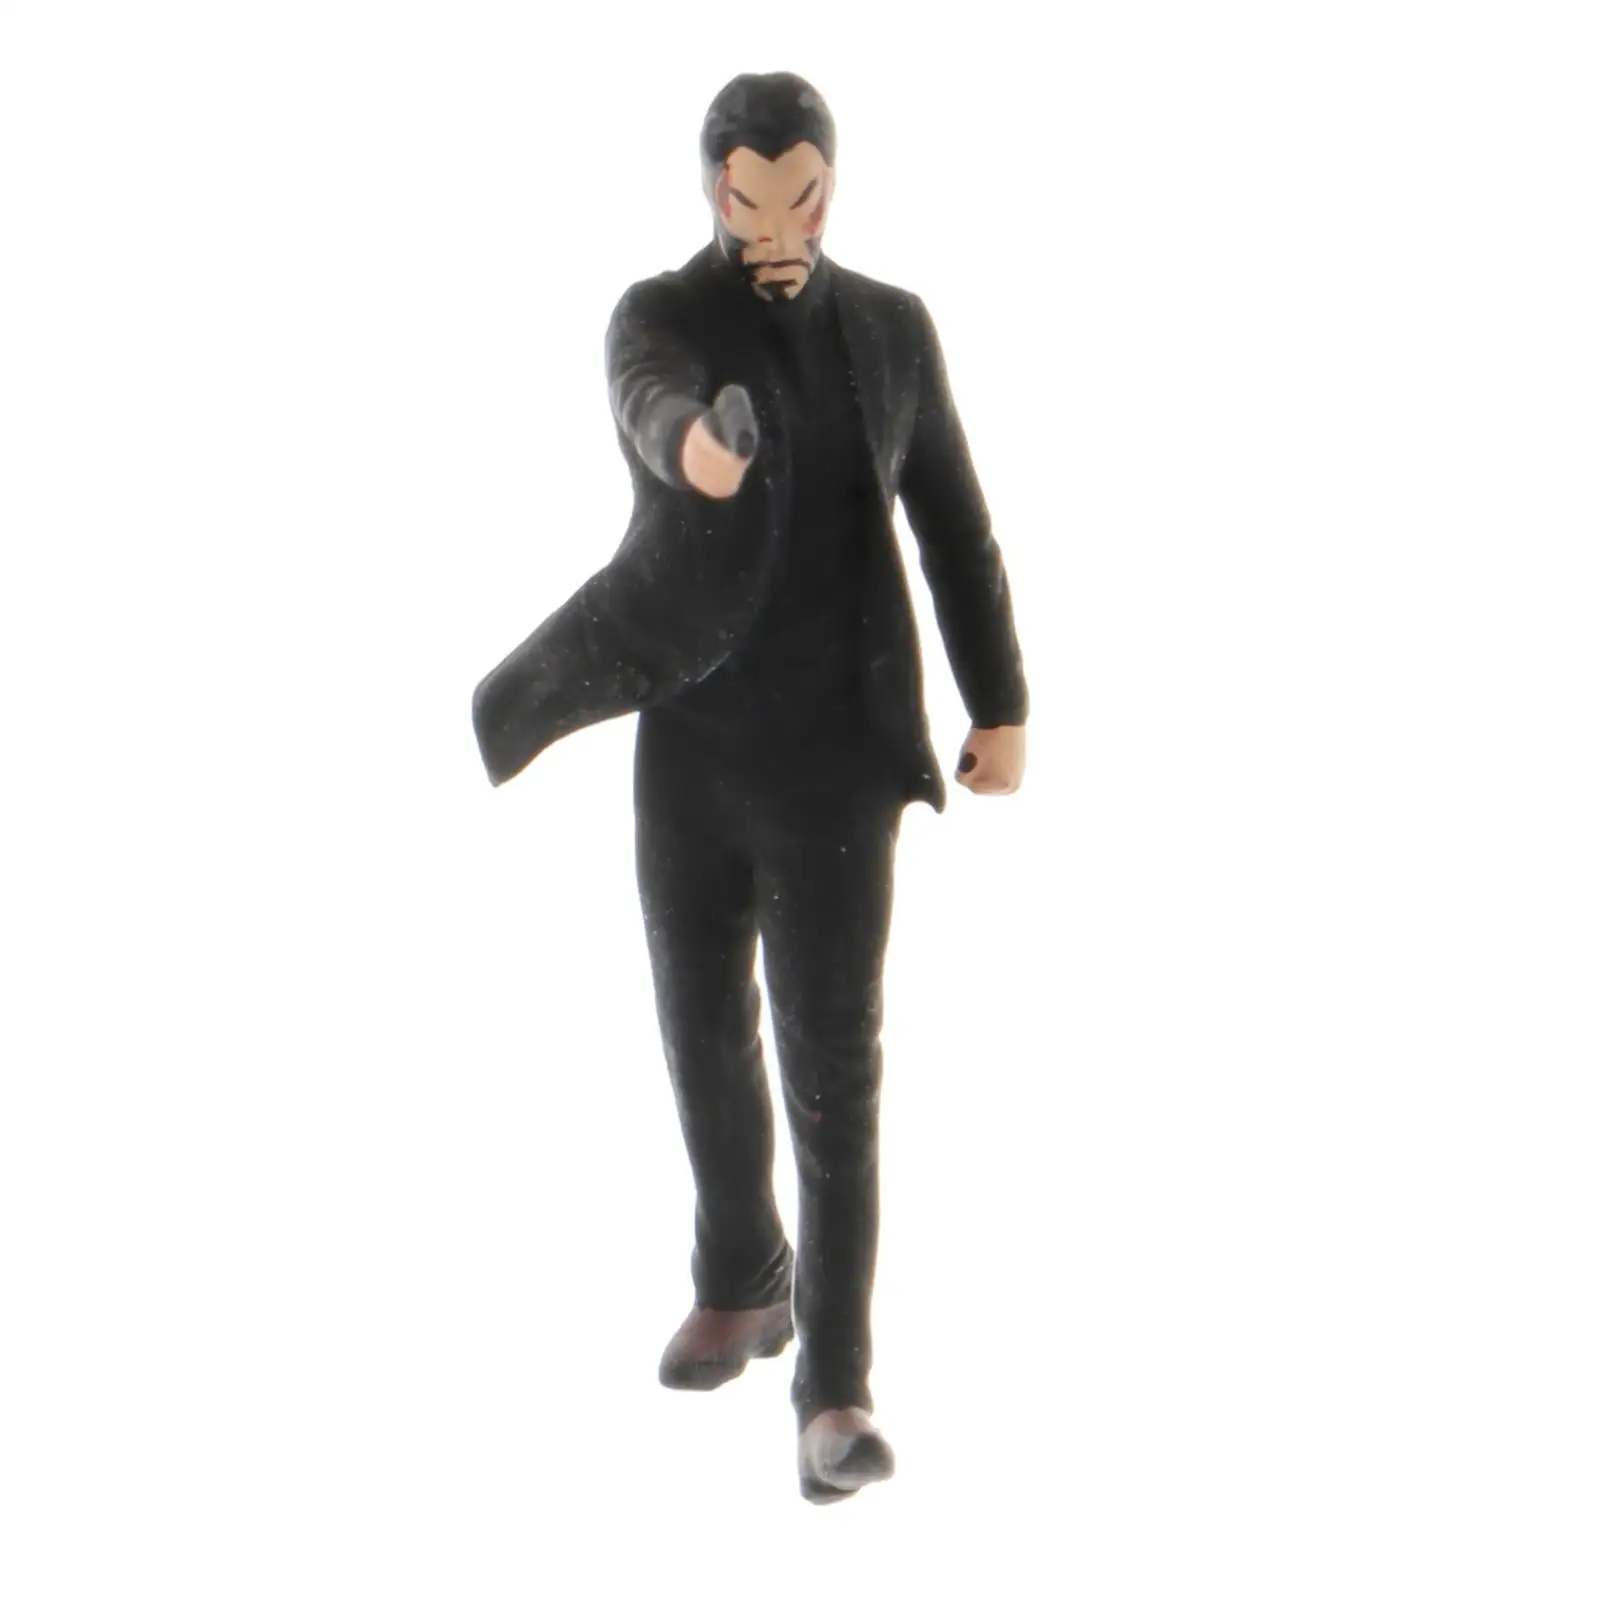 1/64 Scale RM Figures Diorama Model Scenario Miniature for  Siku